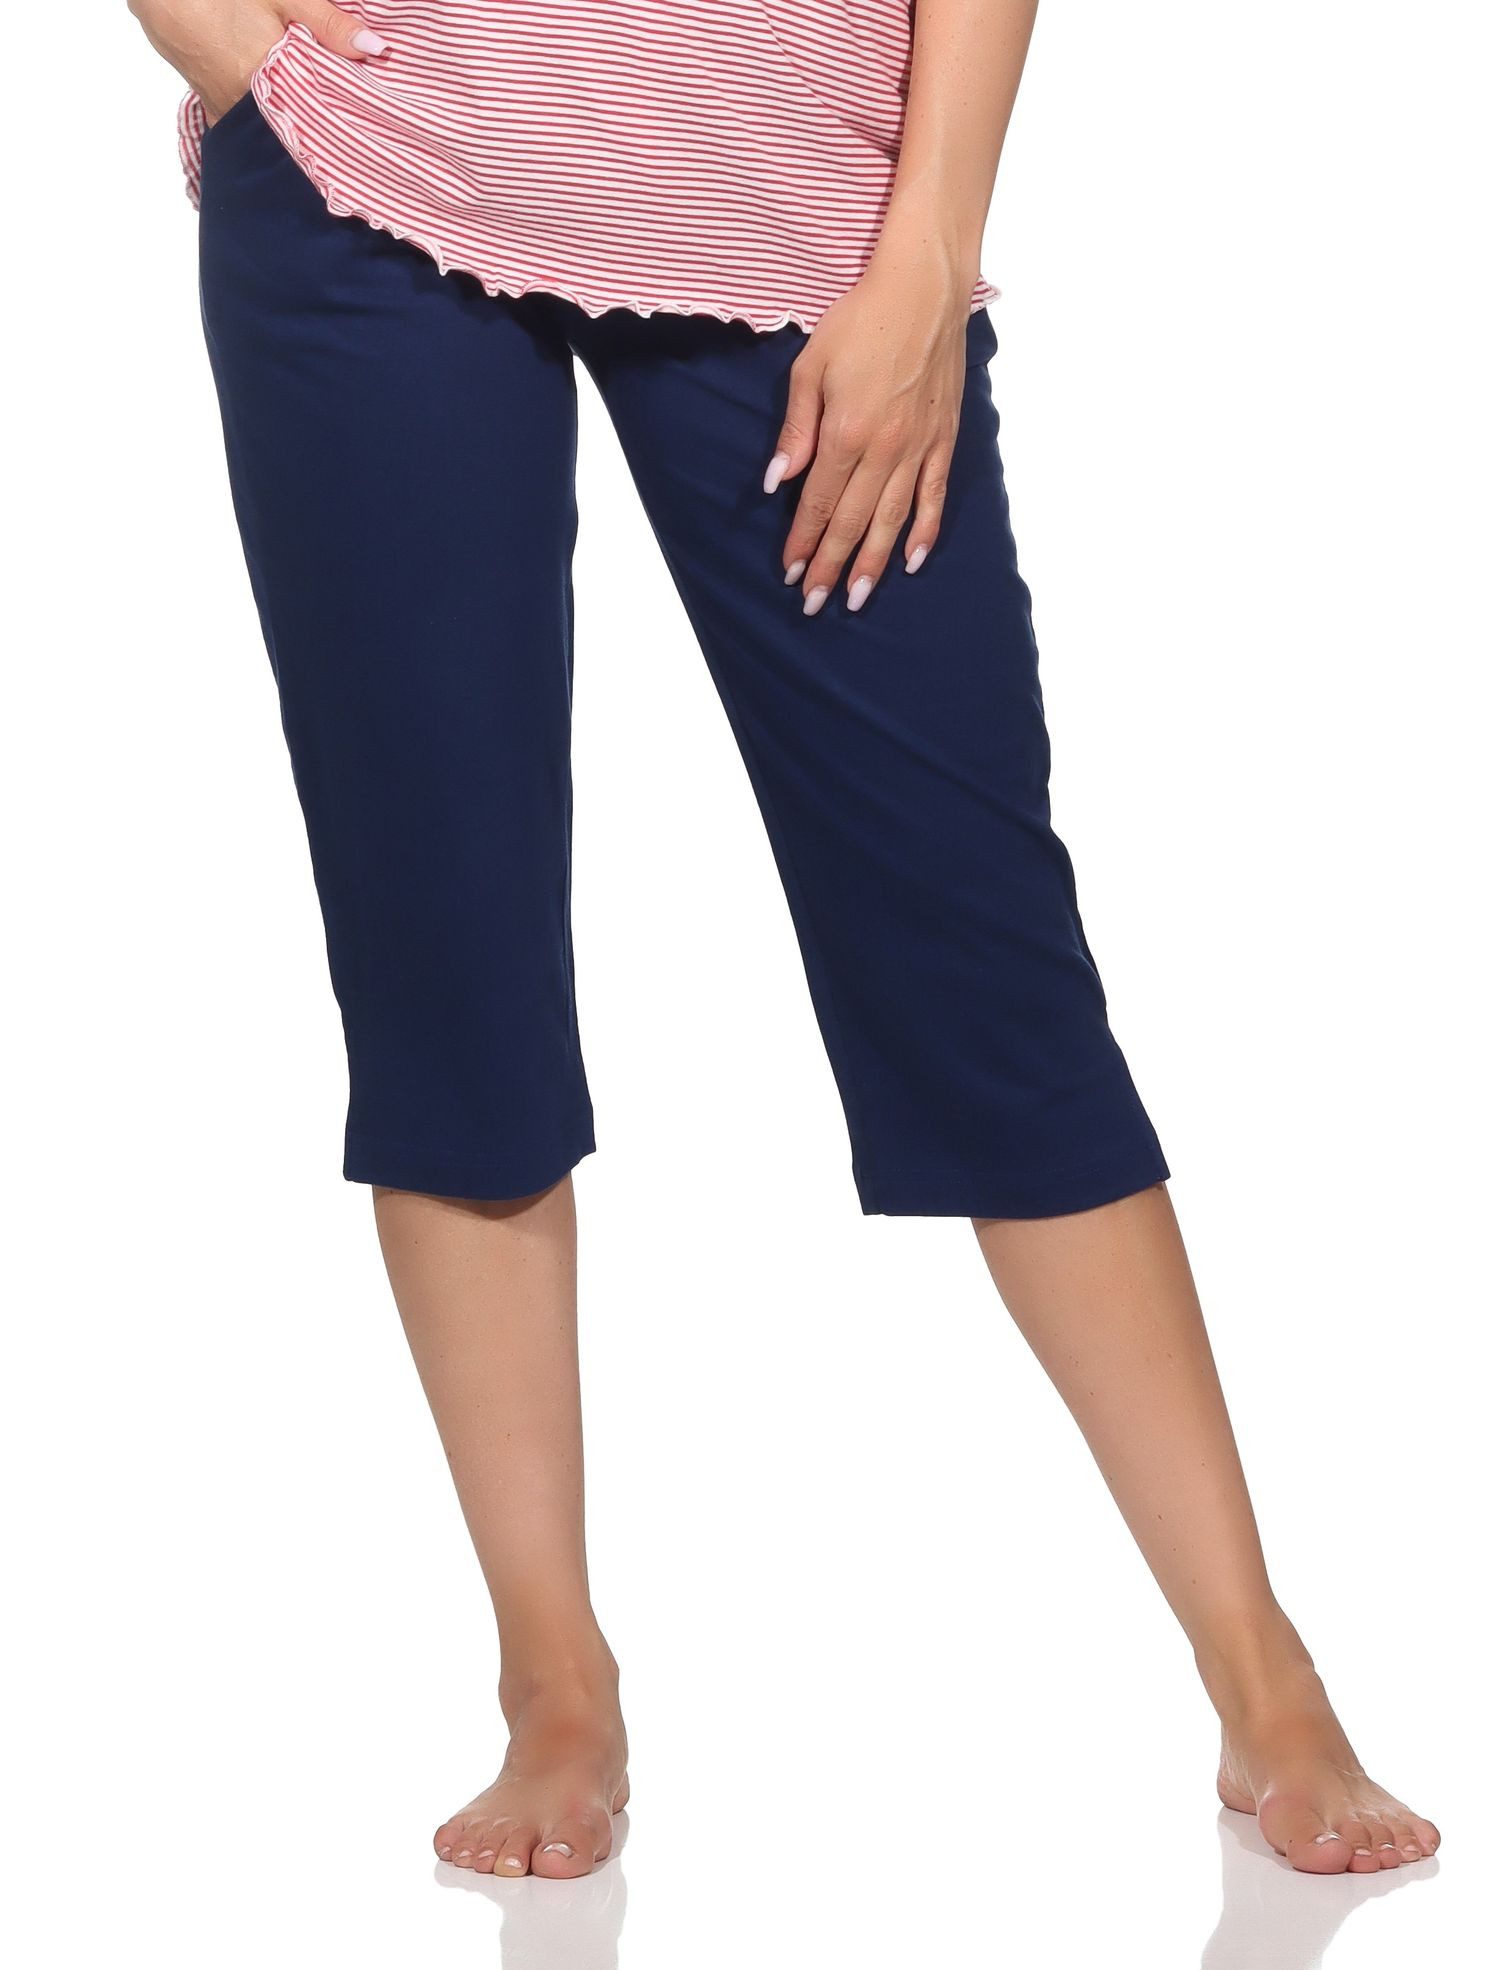 Normann Relaxanzug Damen Schlafanzug Pyjama Capri-Hose 3/4-lang - perfekt zu kombinieren